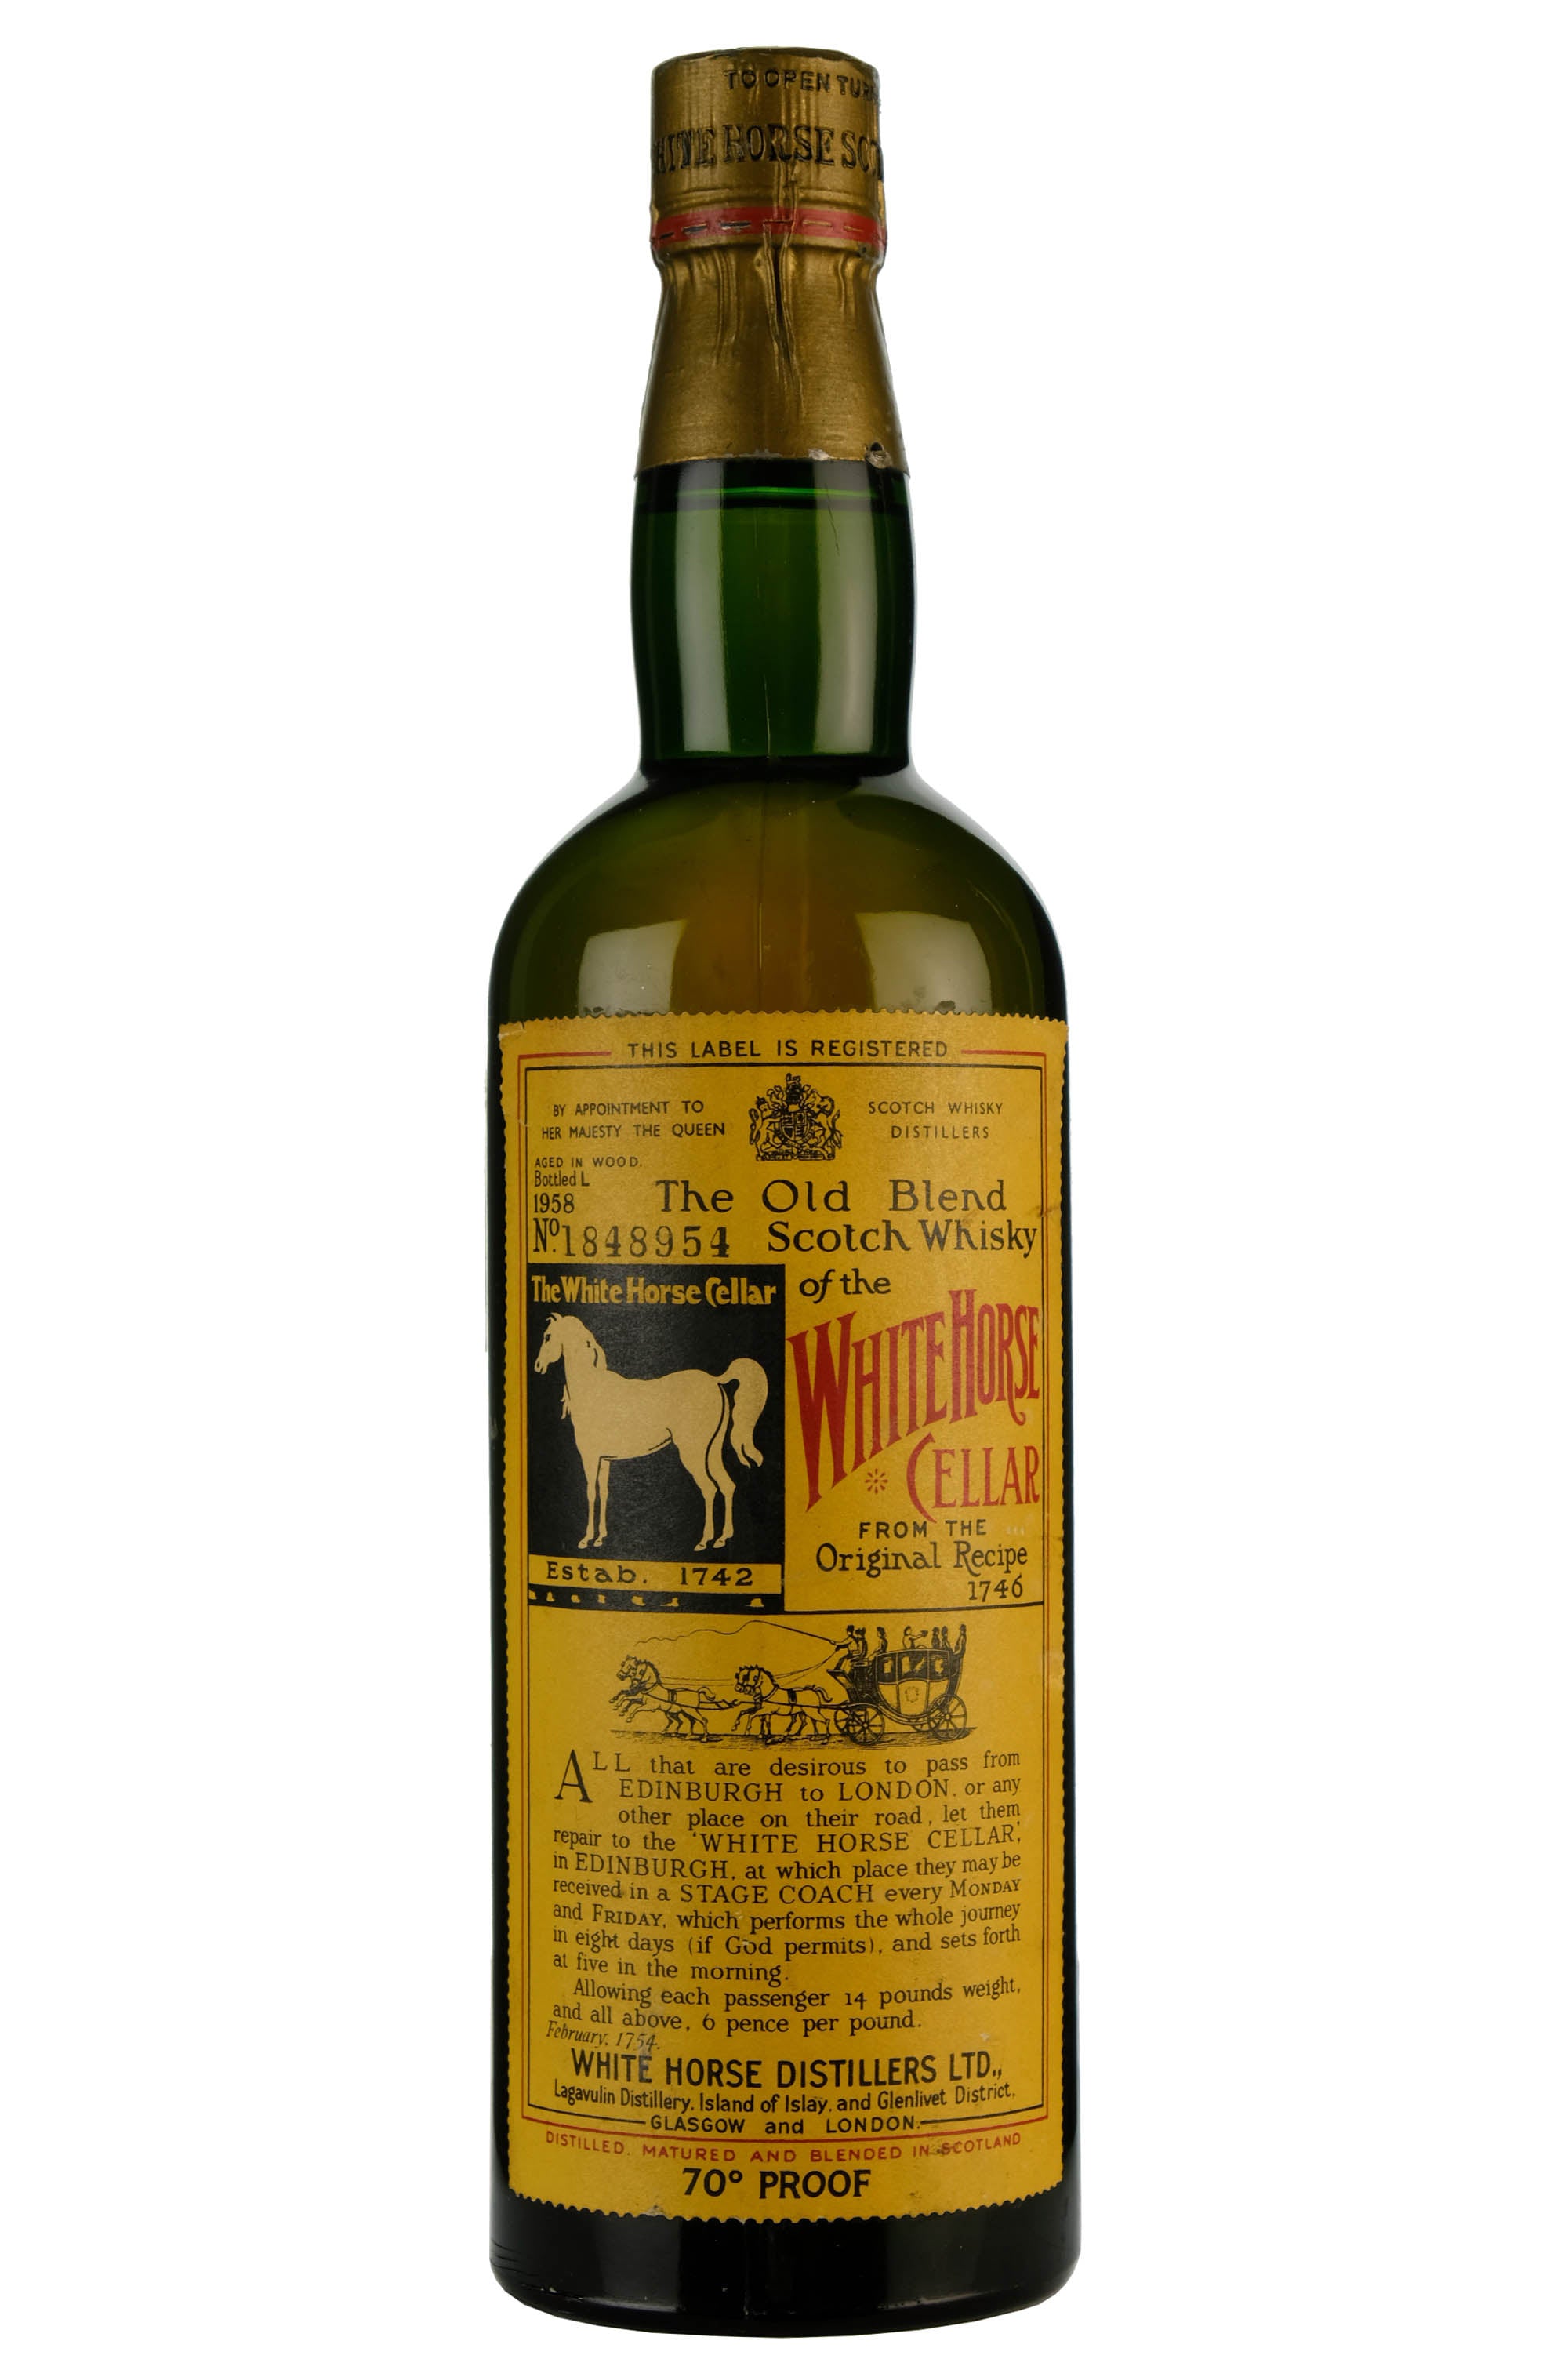 White Horse Cellar Bottled 1958